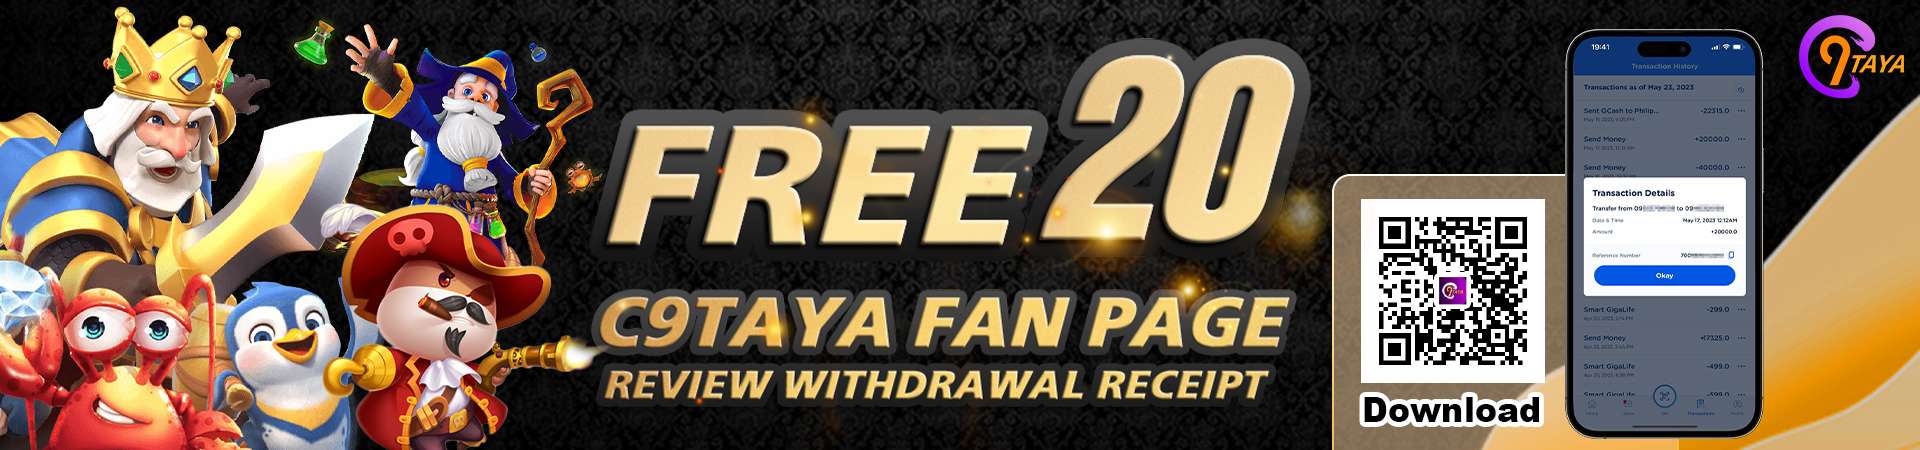 C9taya-Free-20